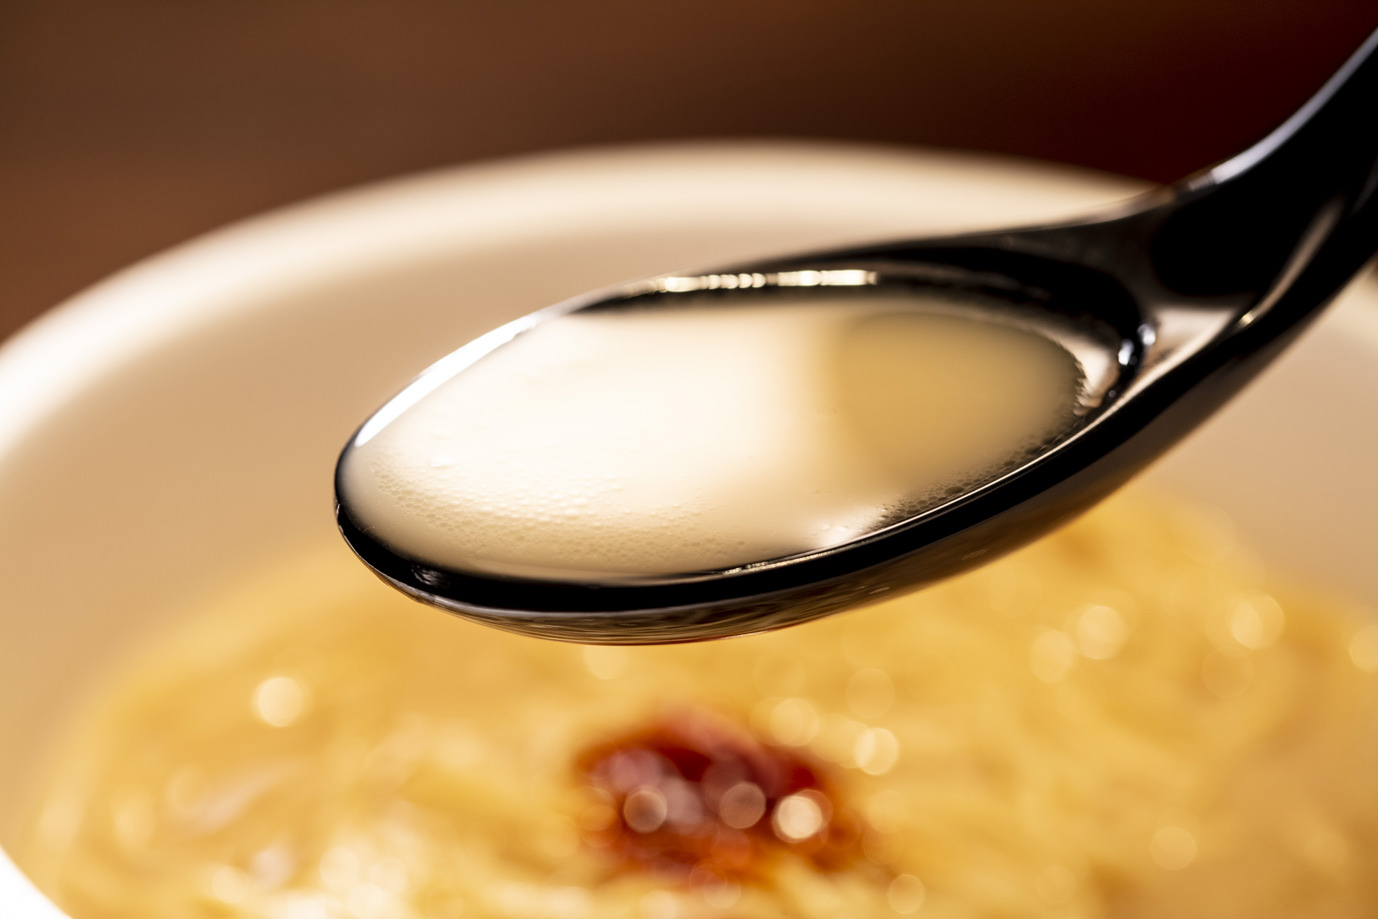 「一蘭」史上初のカップ麺『一蘭 とんこつ』